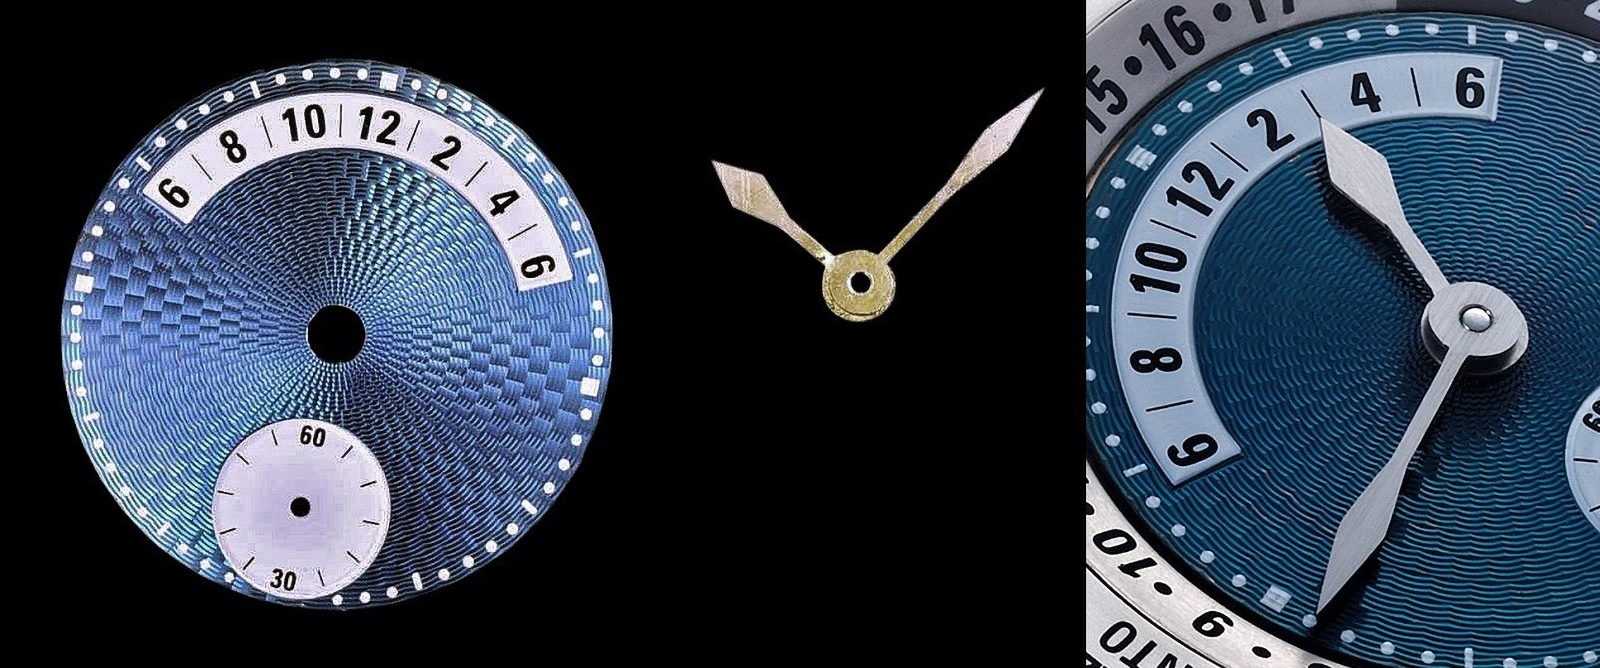 Xưởng chế tác của thương hiệu Andersen Geneve có thể tự mình tạo ra những linh kiện của bộ máy đồng hồ